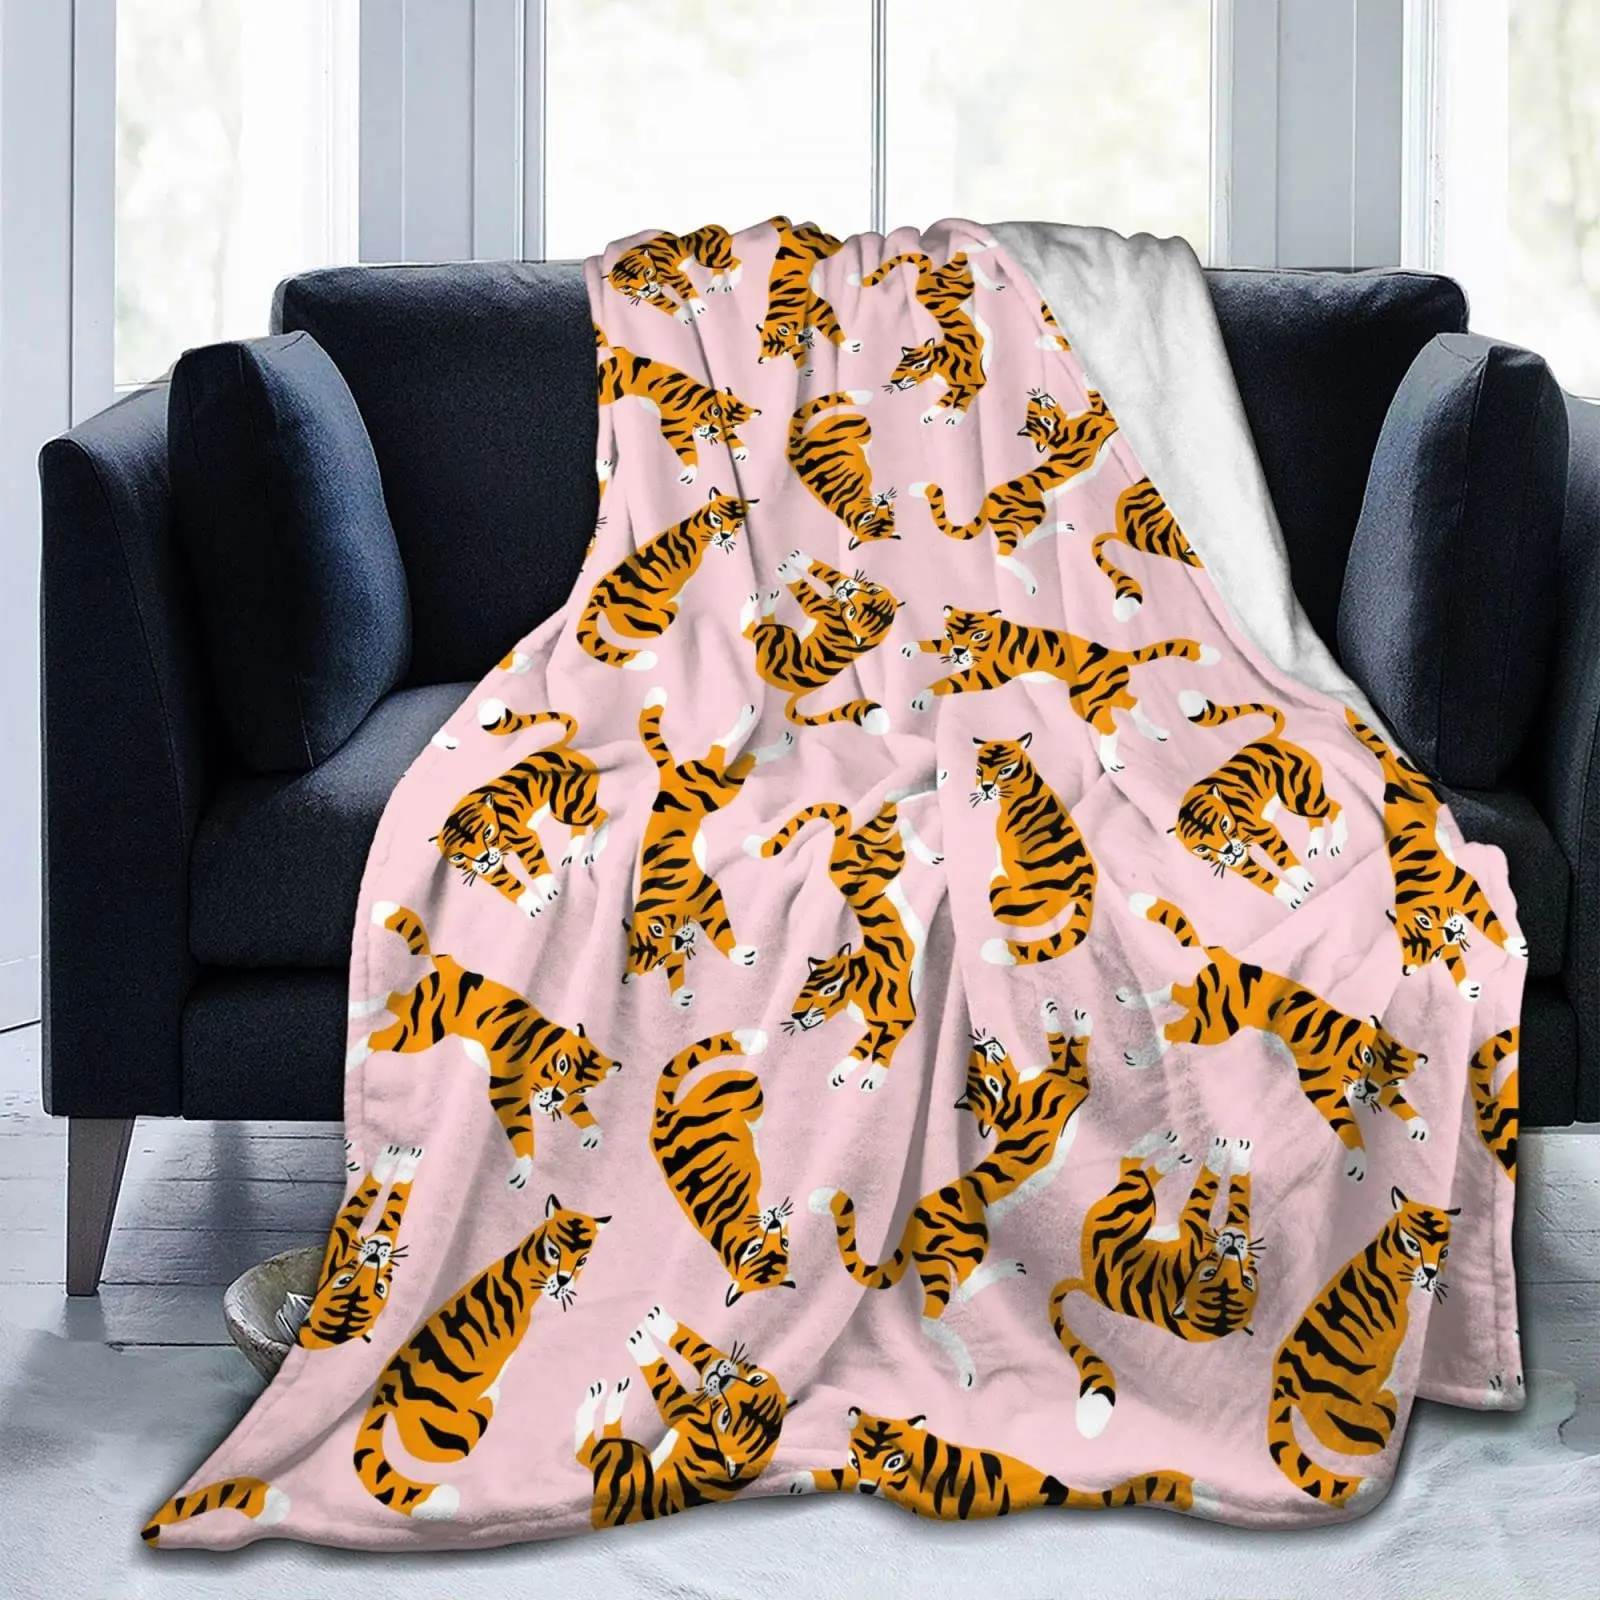 Реалистичные одеяла из тигровой шкуры, Фланелевый текстильный декор, шкура животного, Портативные теплые одеяла для кровати, коврик с принтом королевских животных. 4